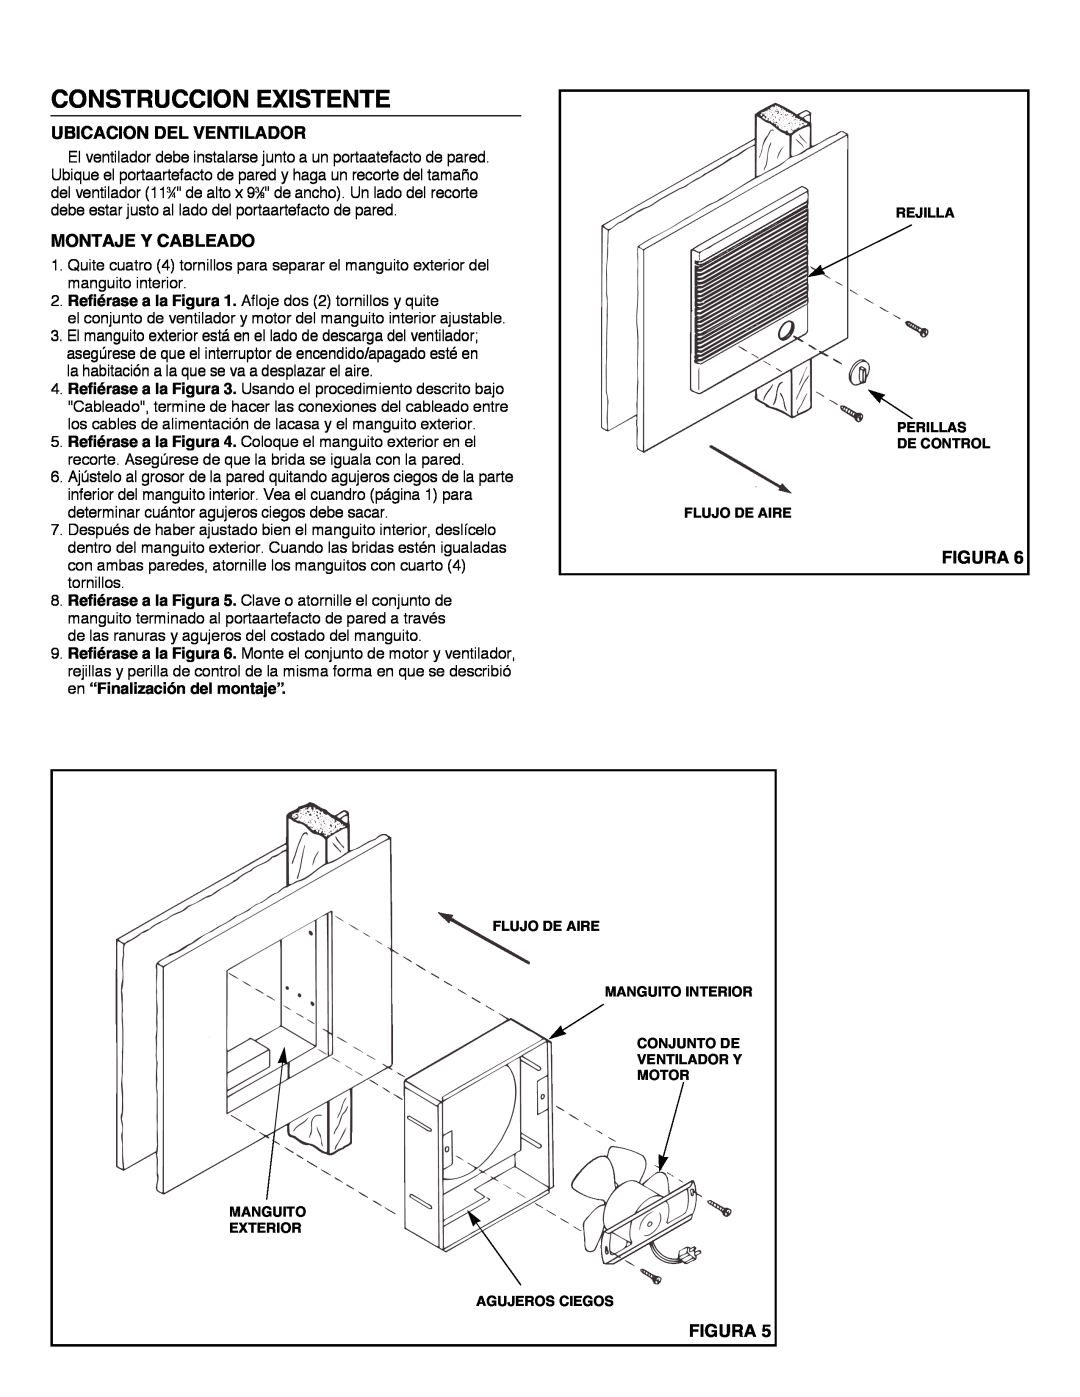 NuTone 8145 installation instructions Construccion Existente, Ubicacion Del Ventilador, Montaje Y Cableado, Figura 